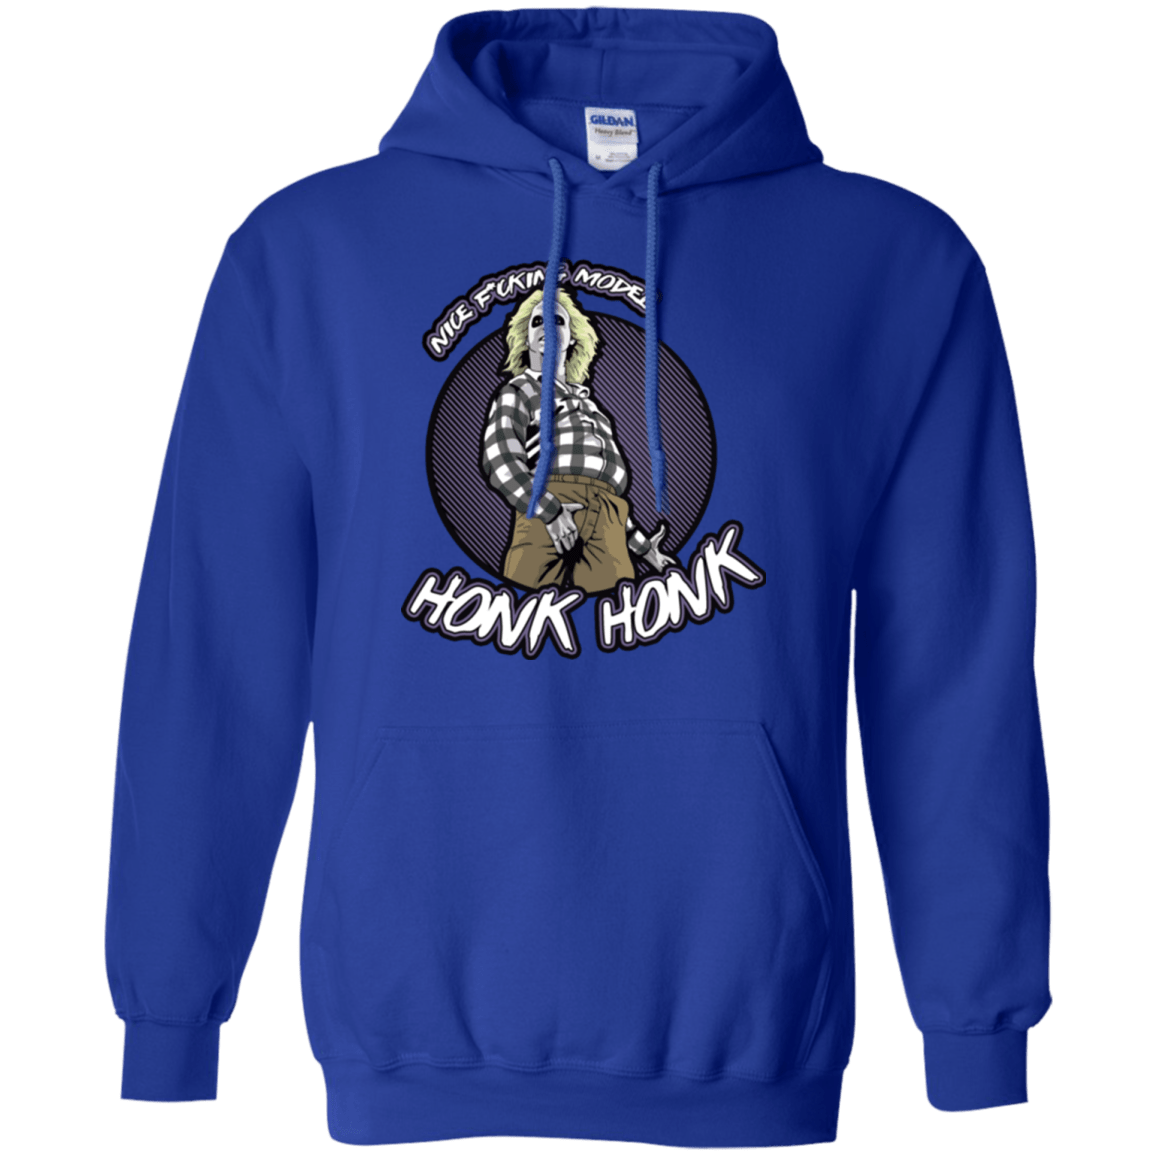 Sweatshirts Royal / Small Honk Honk Pullover Hoodie